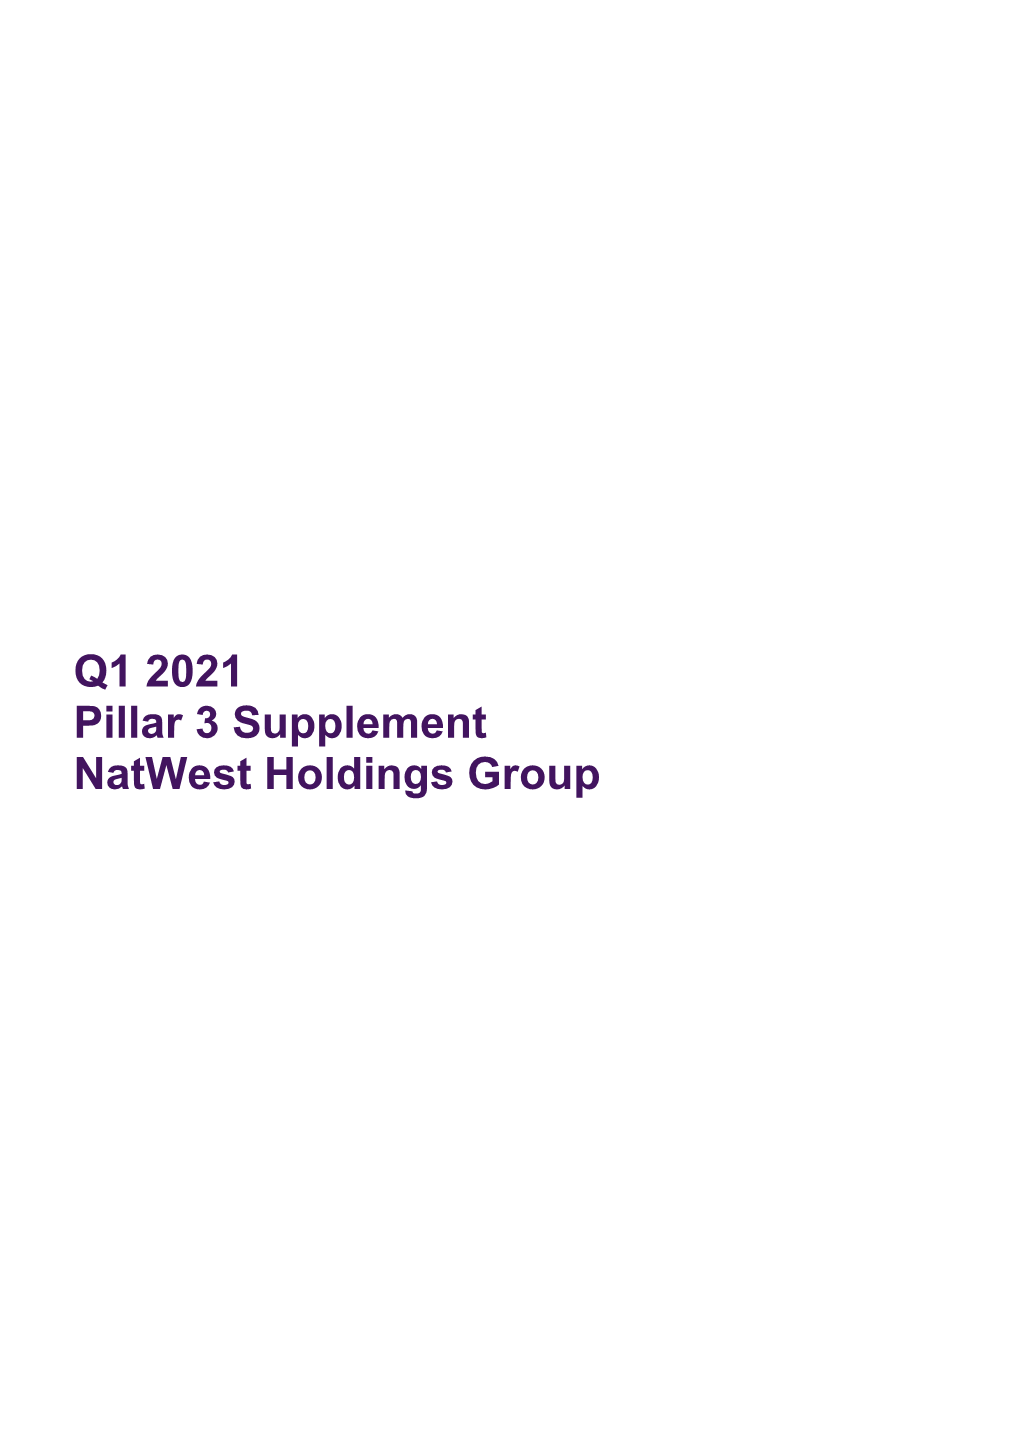 Q1 2021 Pillar 3 Supplement Natwest Holdings Group Pillar 3 Supplement Q1 2021